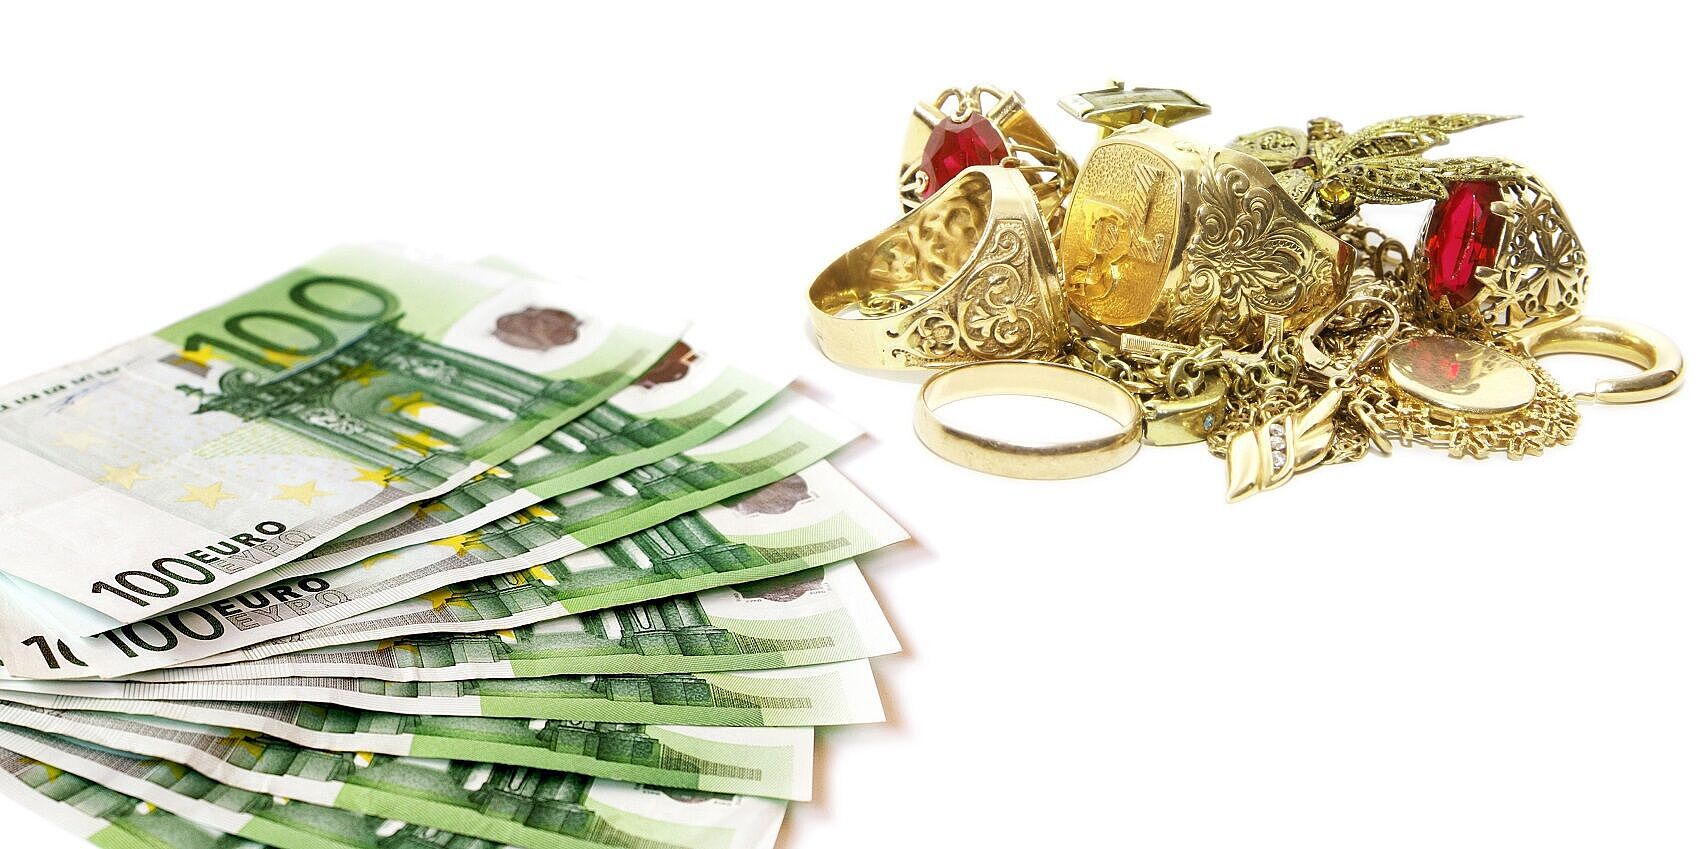 Das meiste Geld kann man mit einem Gold-Pfand im Dorotheum erhalten